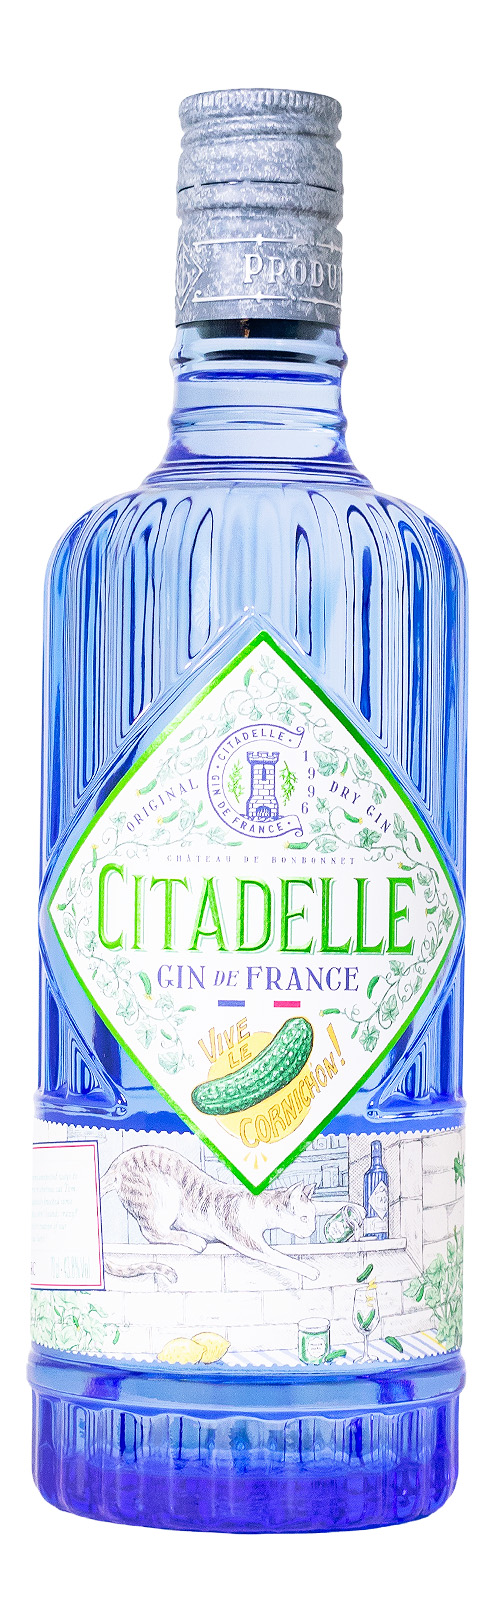 Citadelle Vive le Cornichon Gin - 0,7L 43,8% vol